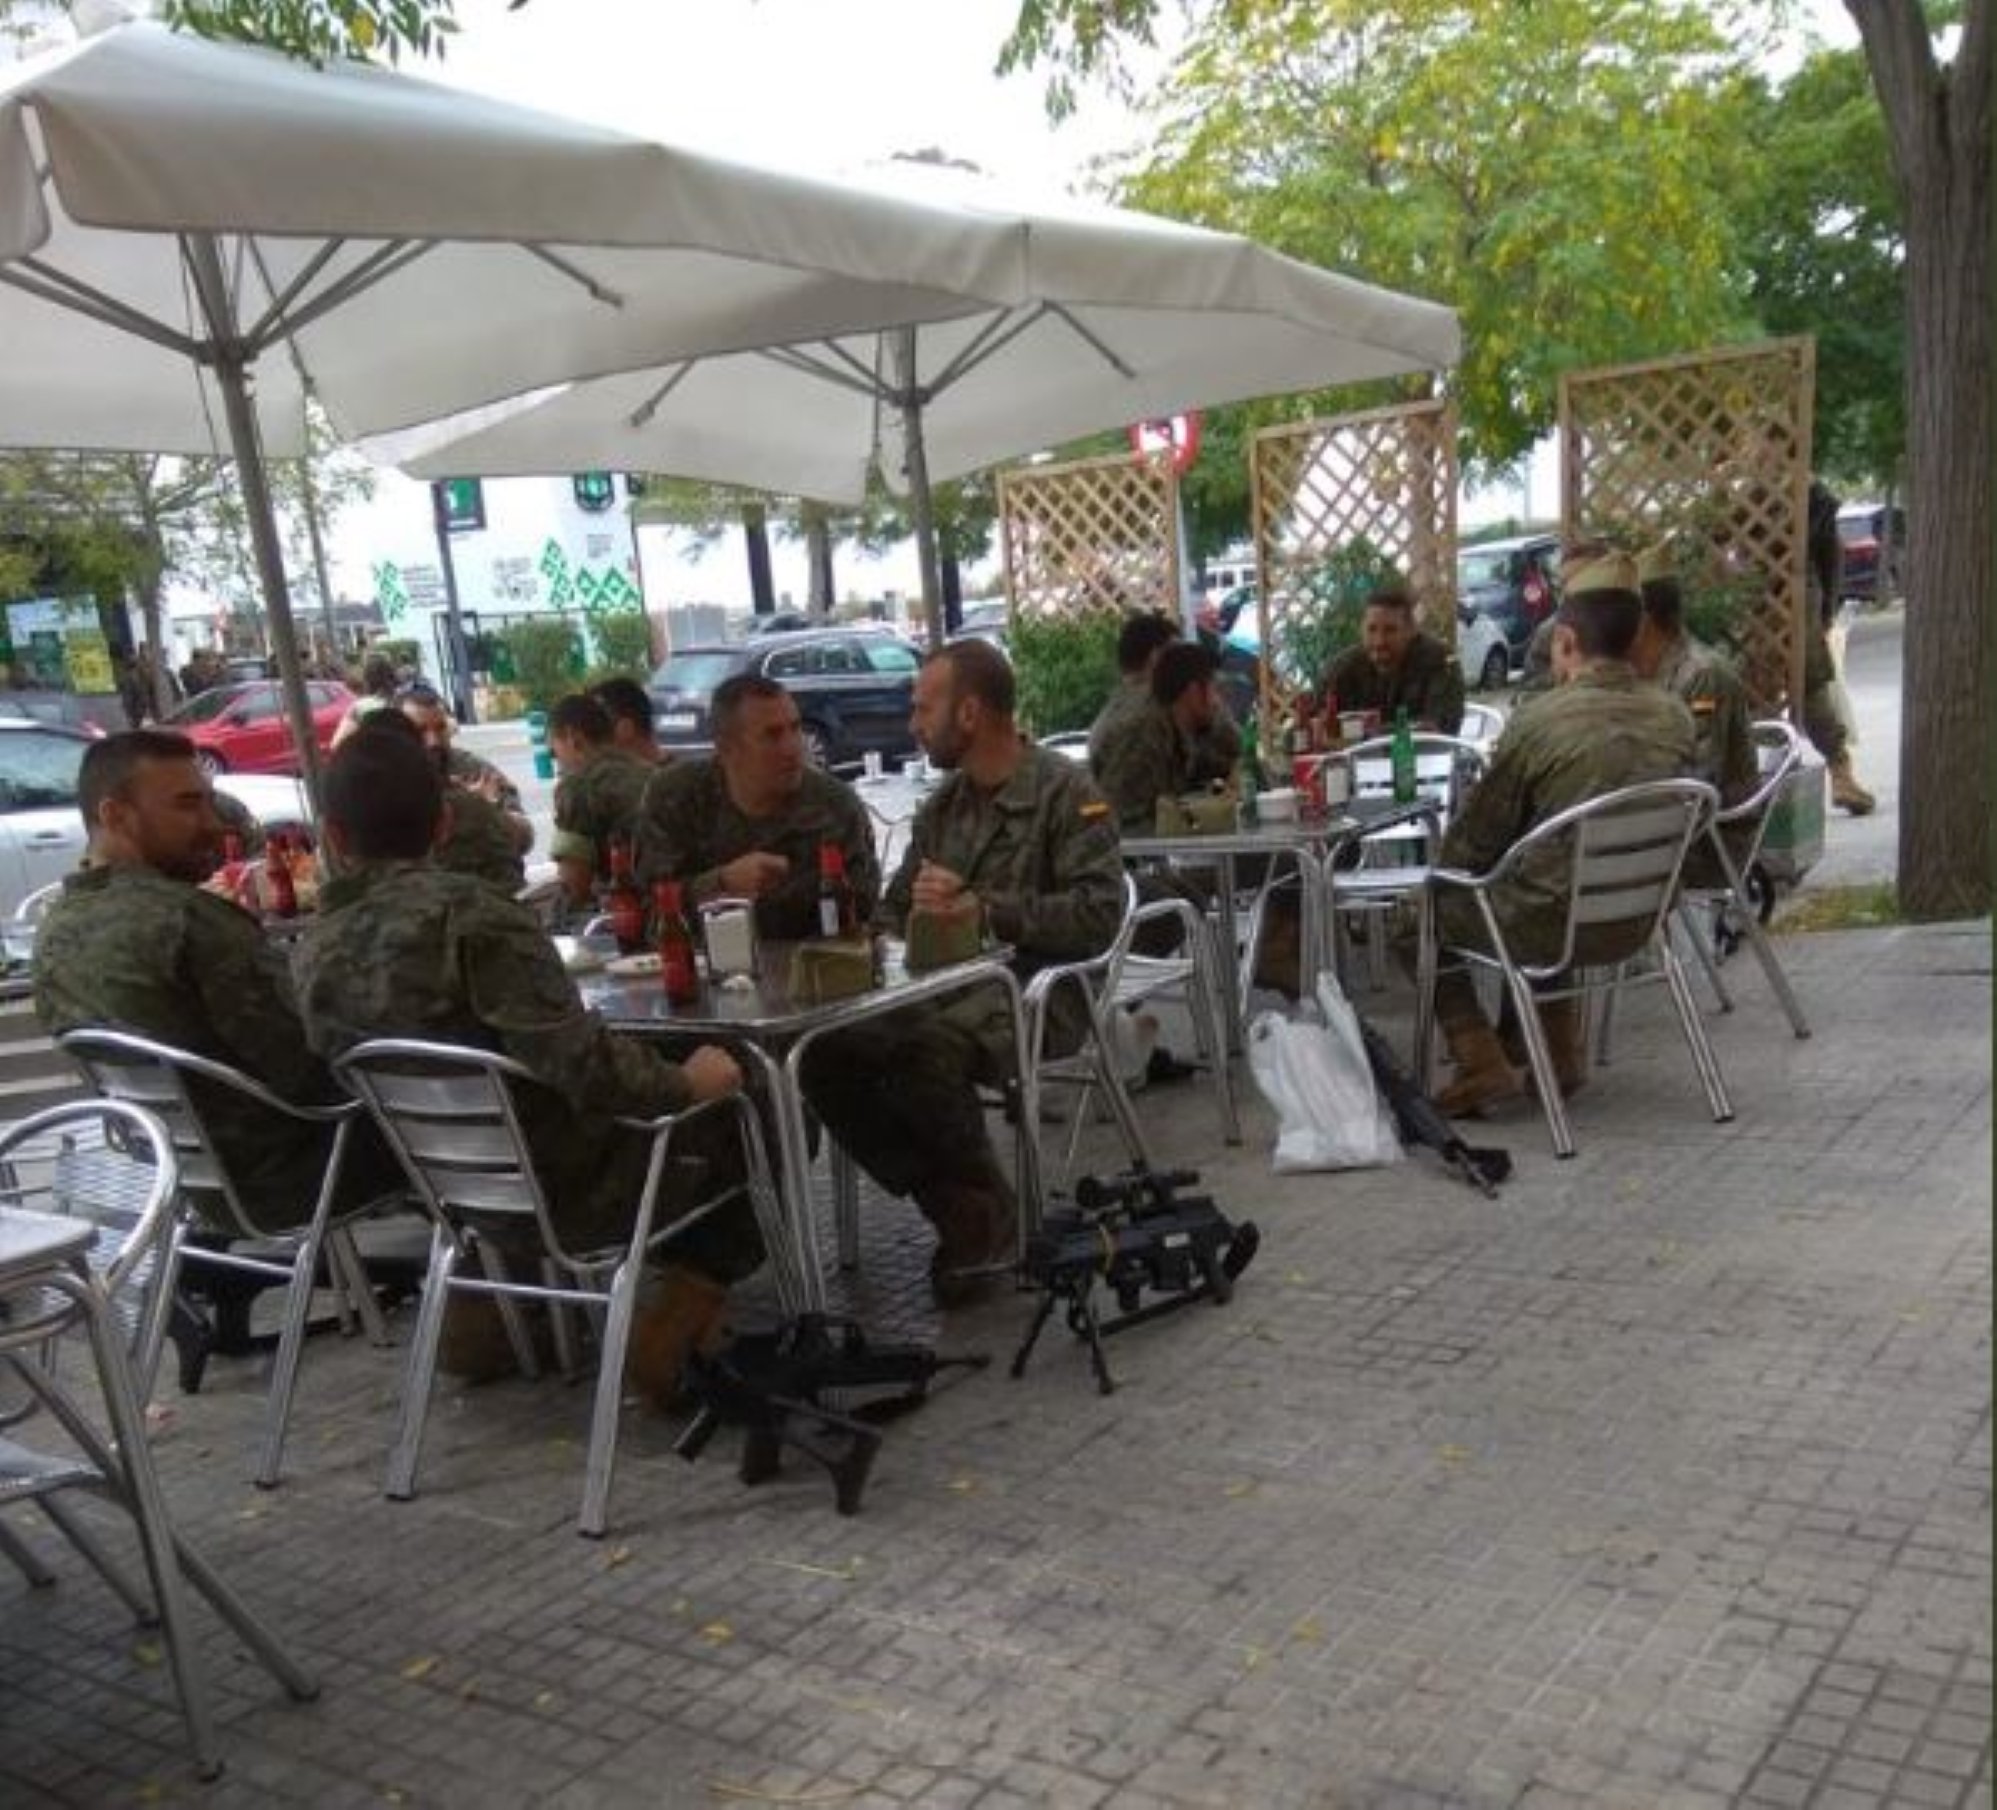 El alcalde de Vilafranca pide explicaciones por la presencia de los militares